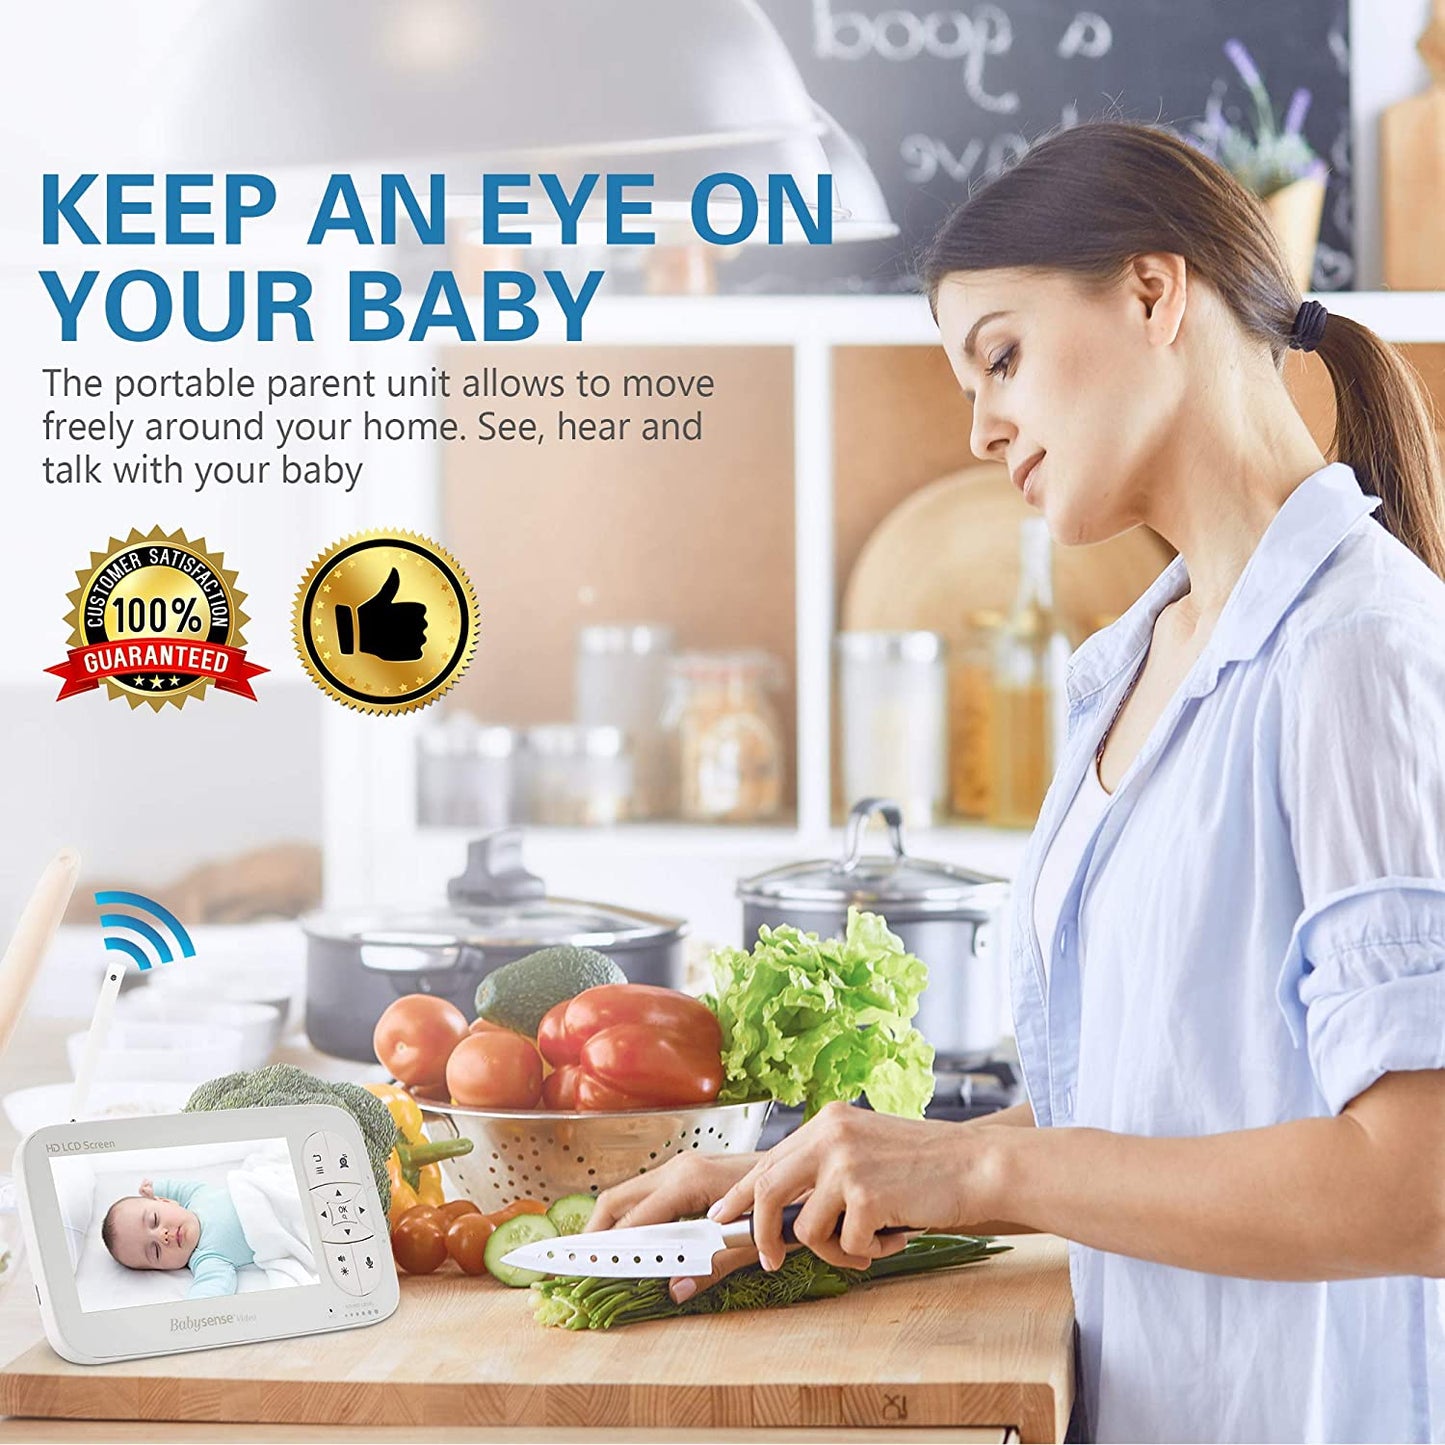 Babysense Babá Eletrônica HD de 5 ", monitor de bebê de vídeo com câmera e áudio, duas câmeras